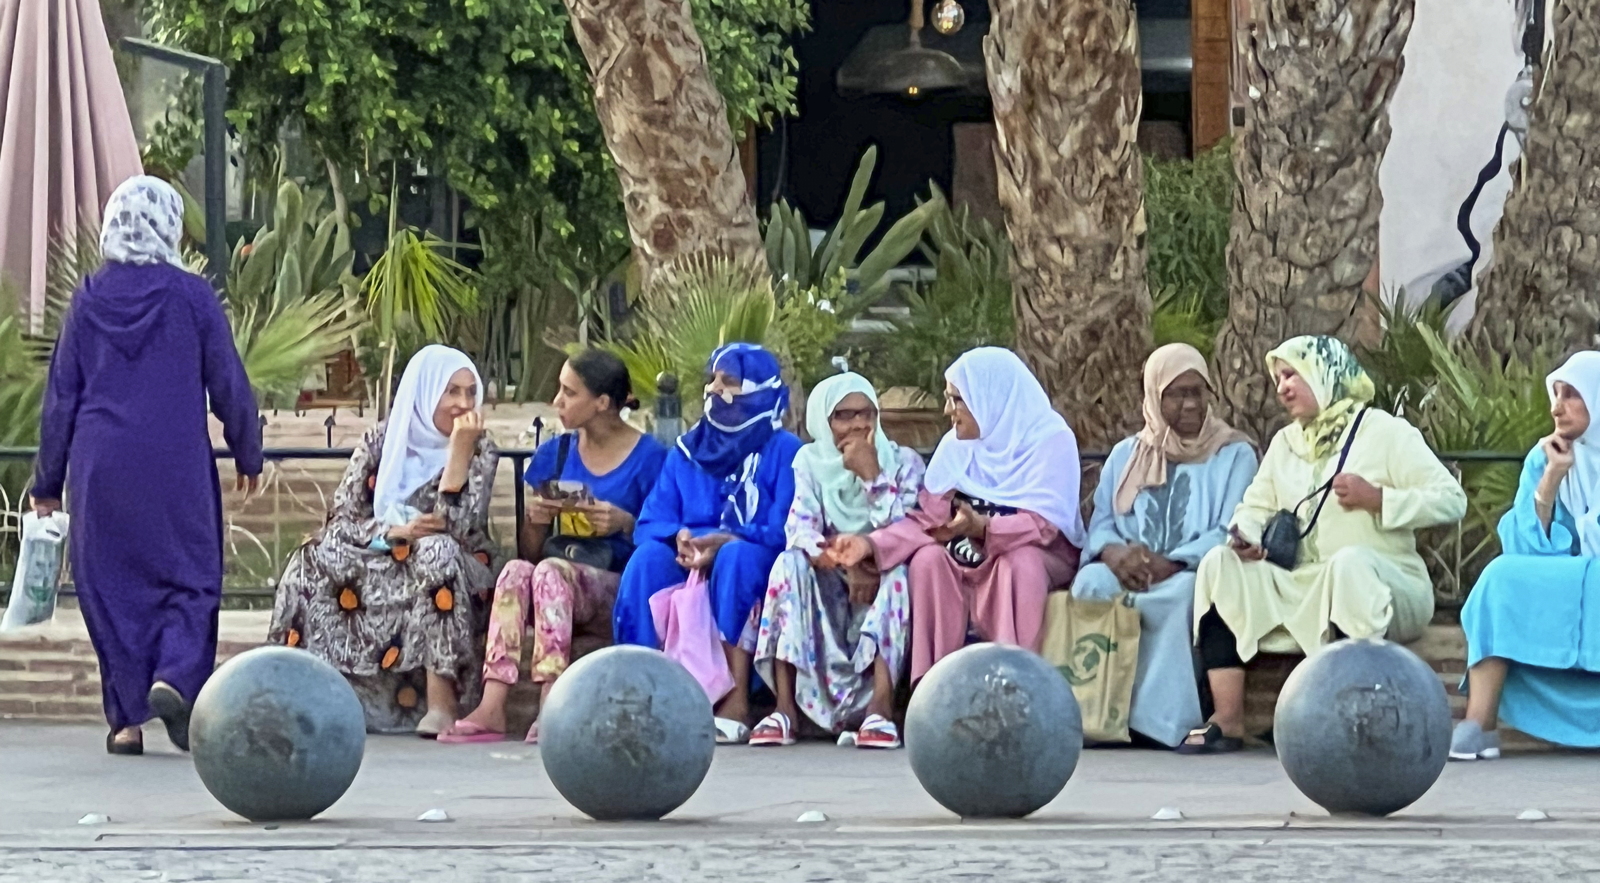 2 – Council of women, Morocco